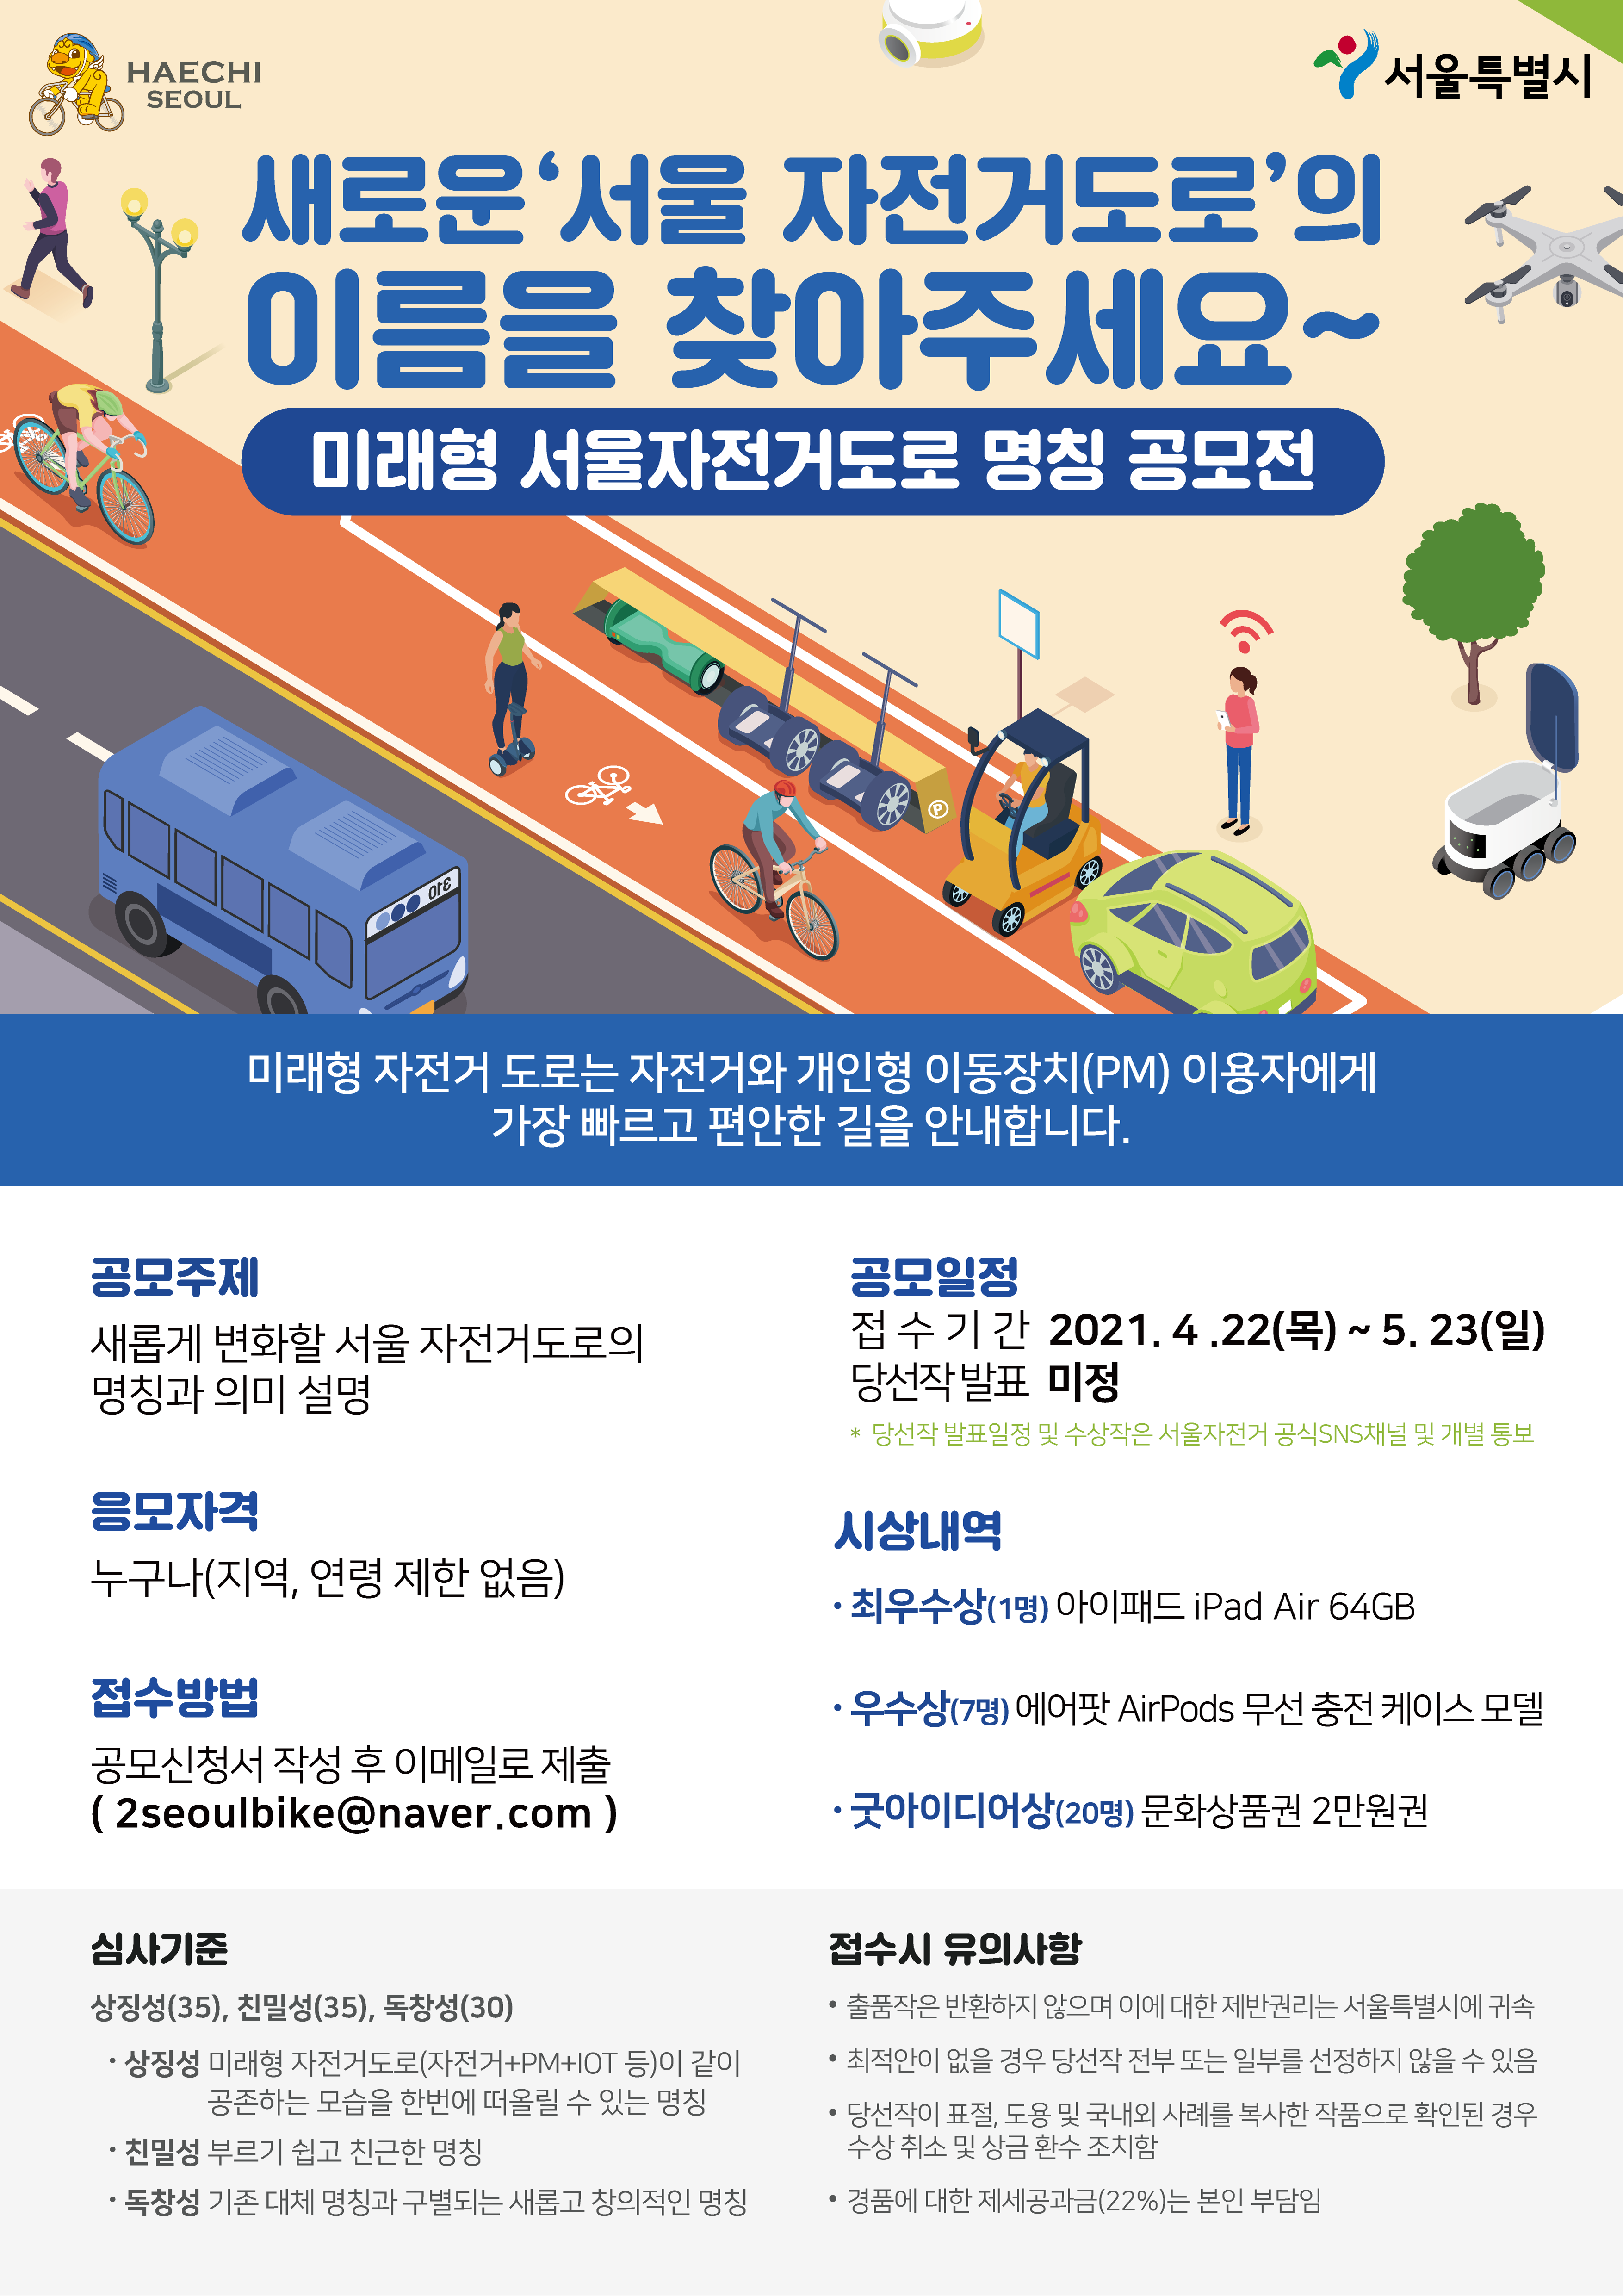 「미래형 서울 자전거도로 명칭 공모전」